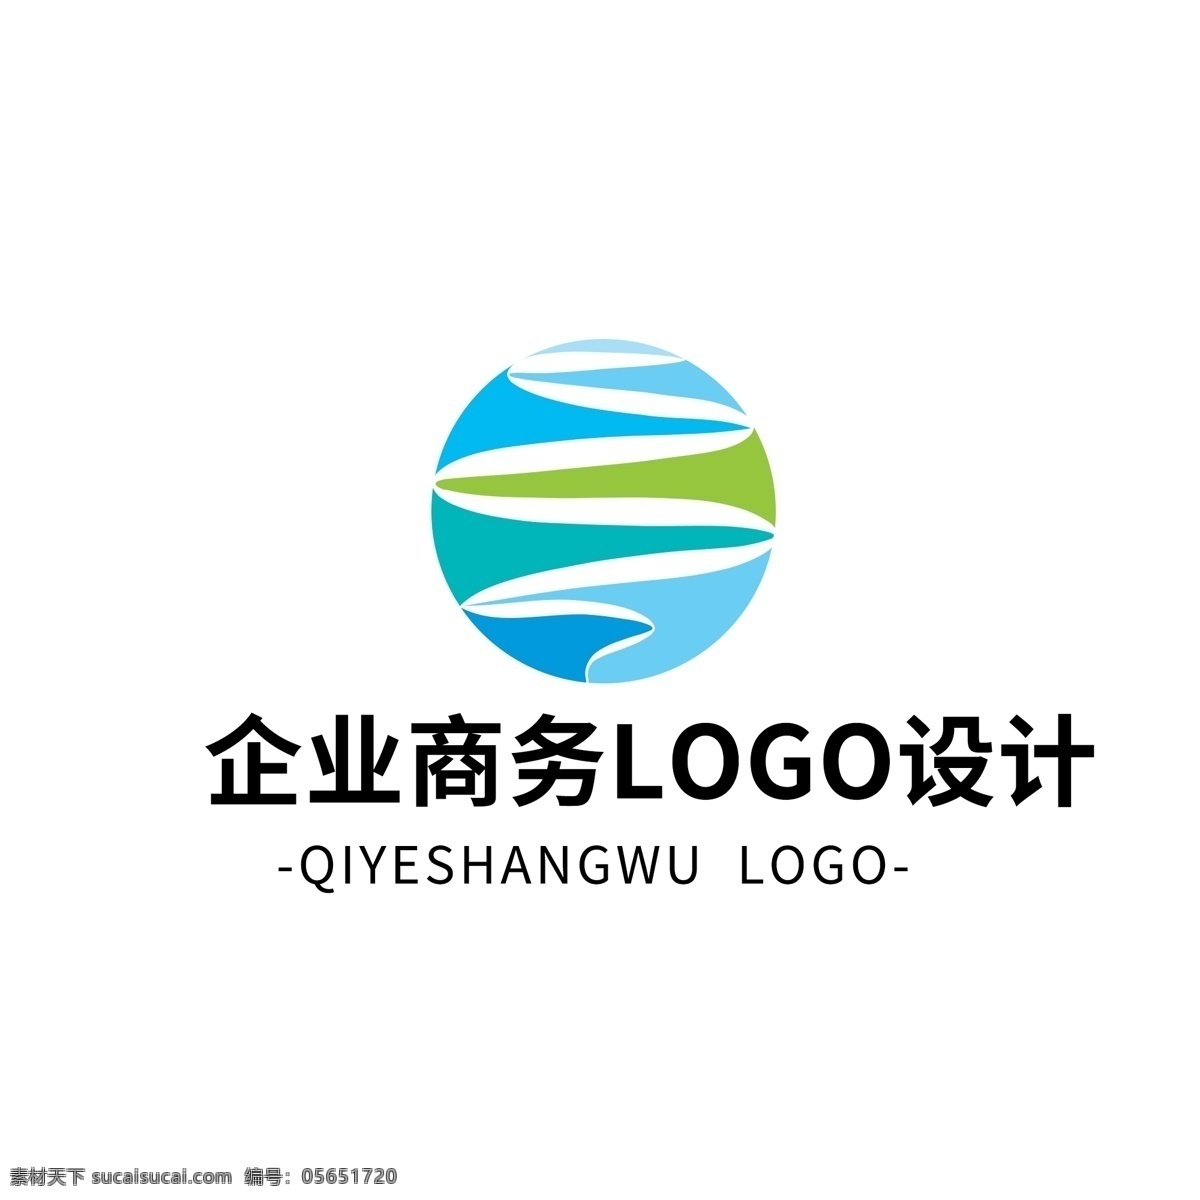 简约 大气 创意 企业 商务 logo 标志设计 图形 矢量 蓝色